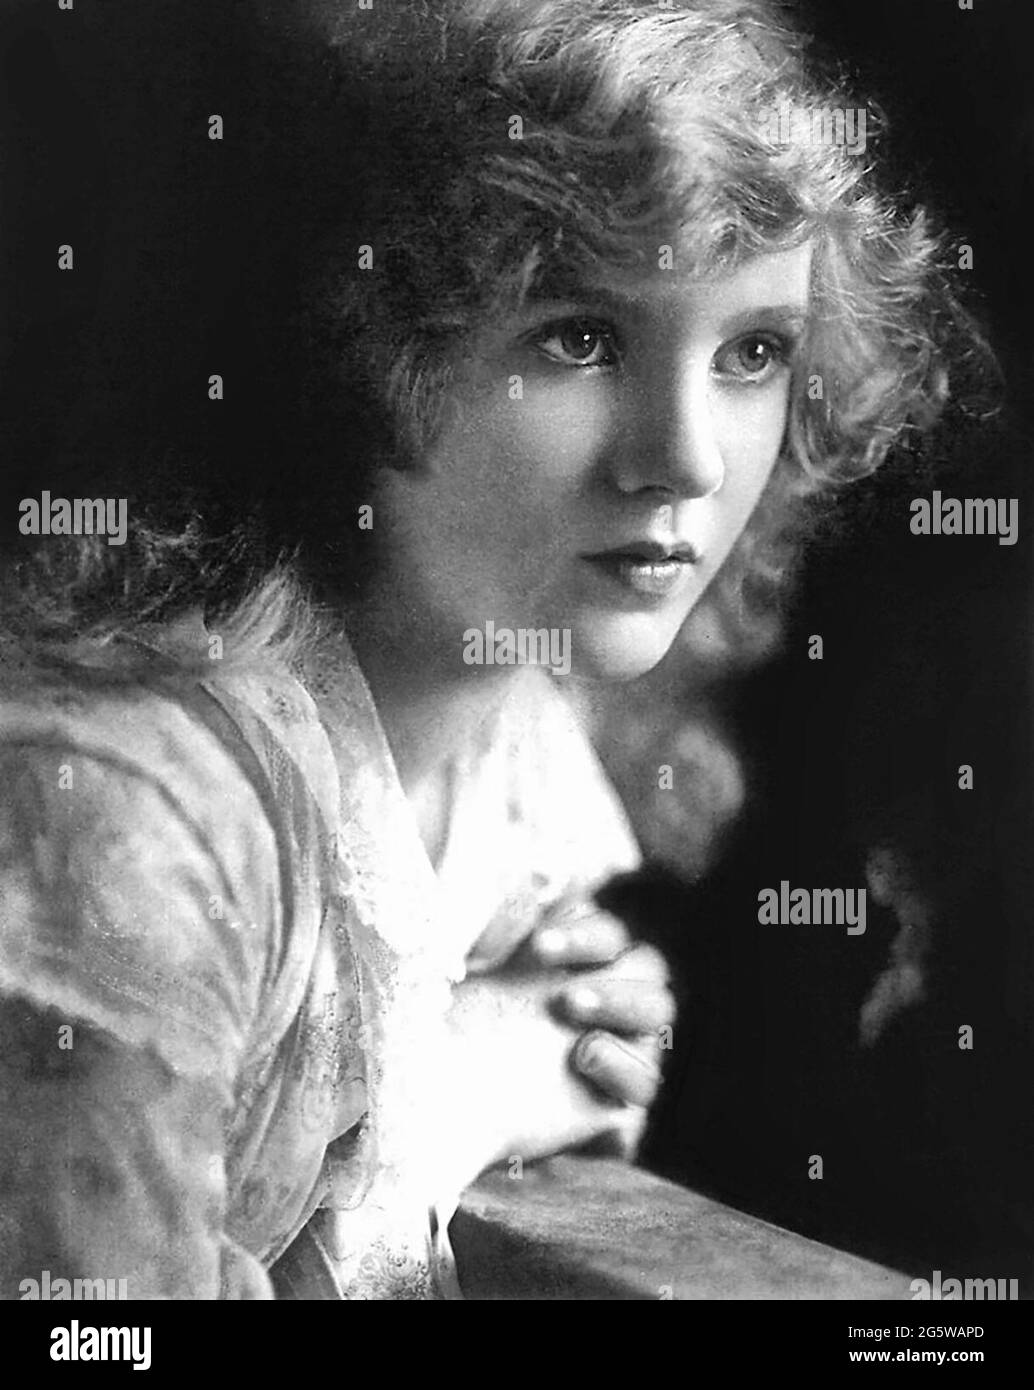 L'actrice de cinéma adolescente Mary Miles Minter (née en 1902) en 1917, photographiée dans un film publicitaire de Flying A Studios. Minter a quitté Flying A en 1918 Banque D'Images